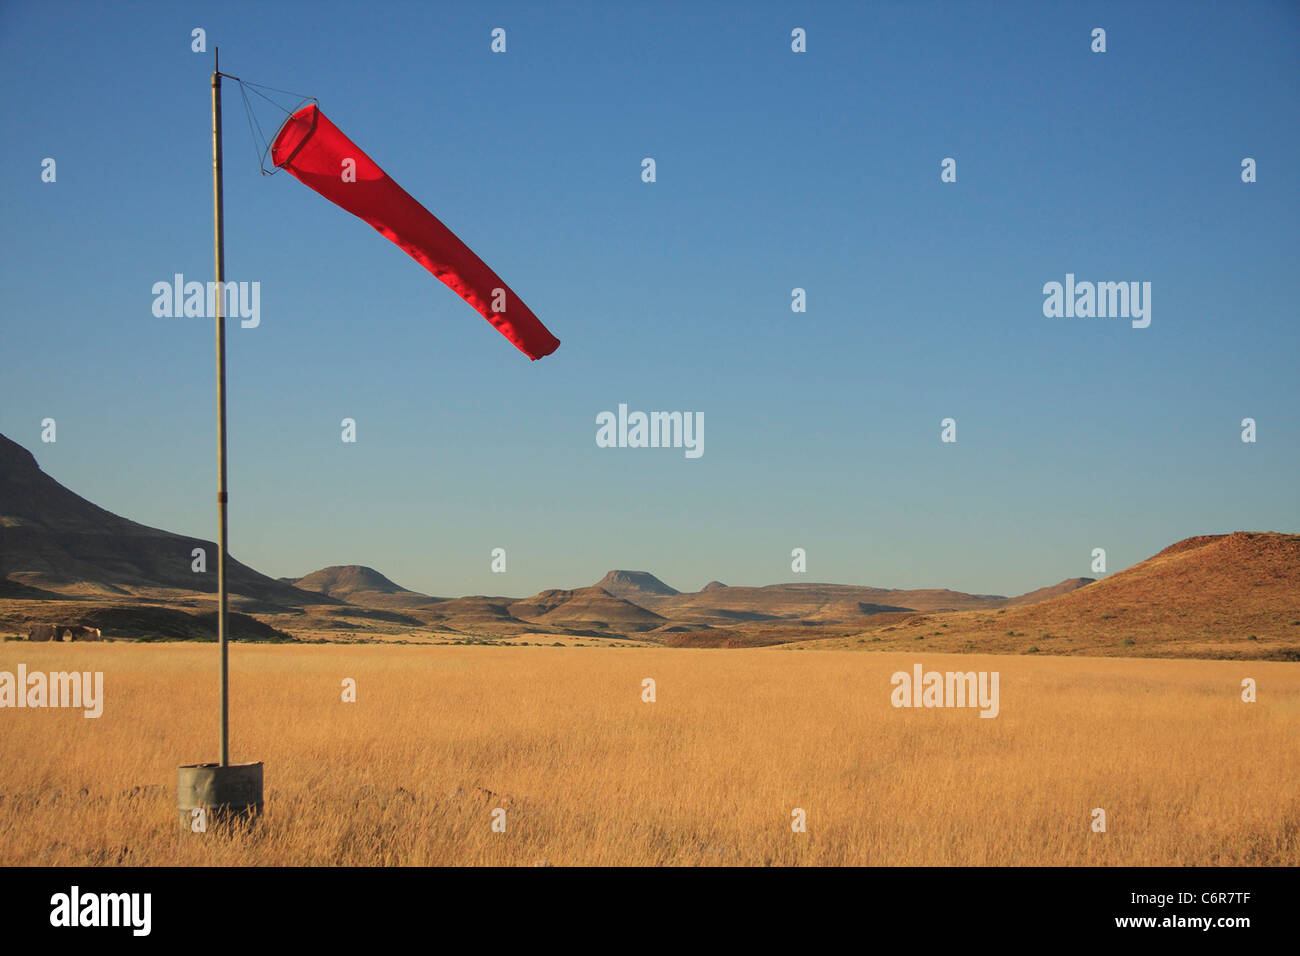 Red air sock dans paysage de désert Banque D'Images